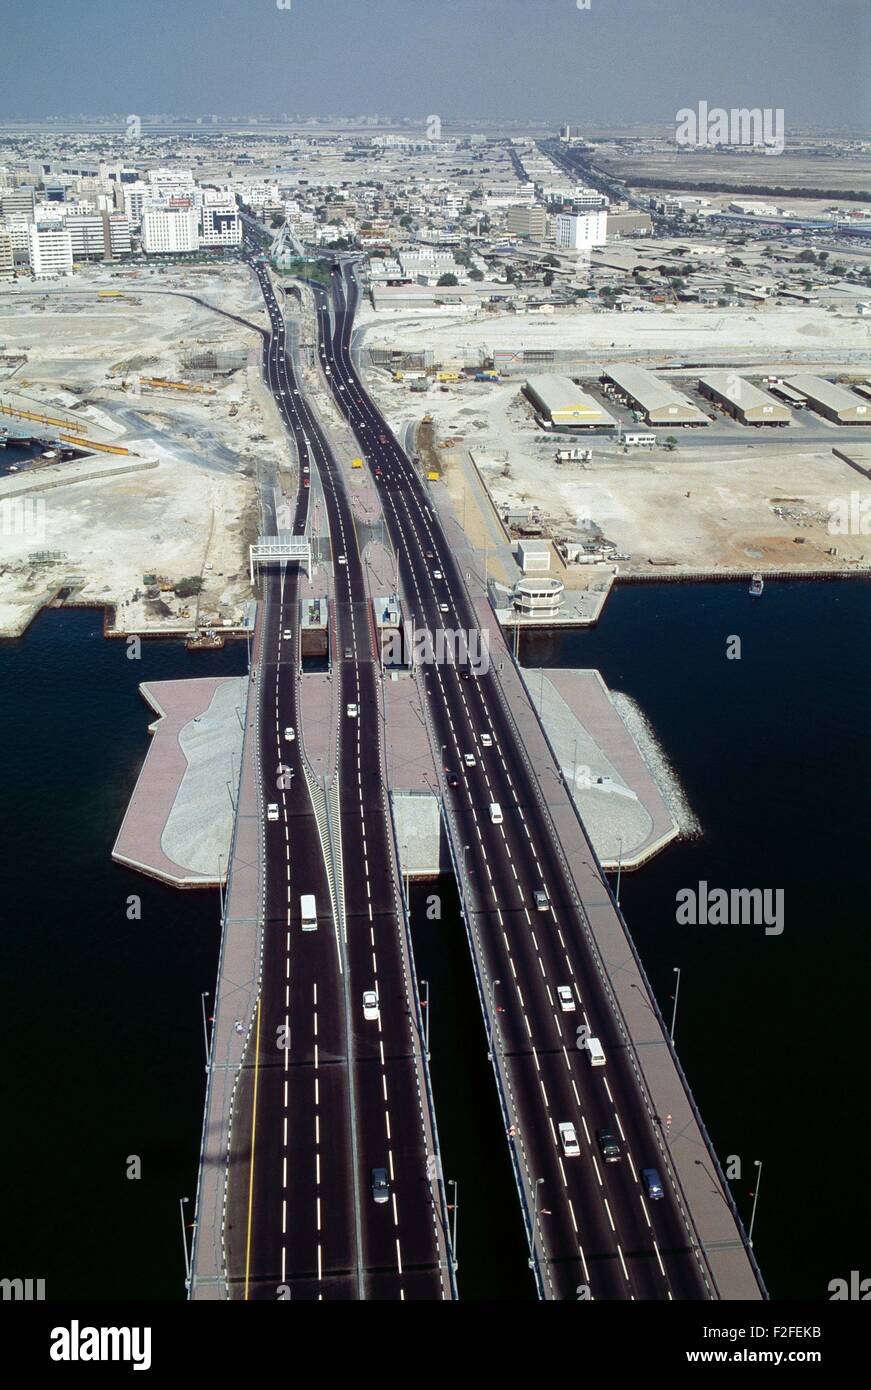 Dubai and Dubai Creek in the 1990s, before the big development boom. Stock Photo